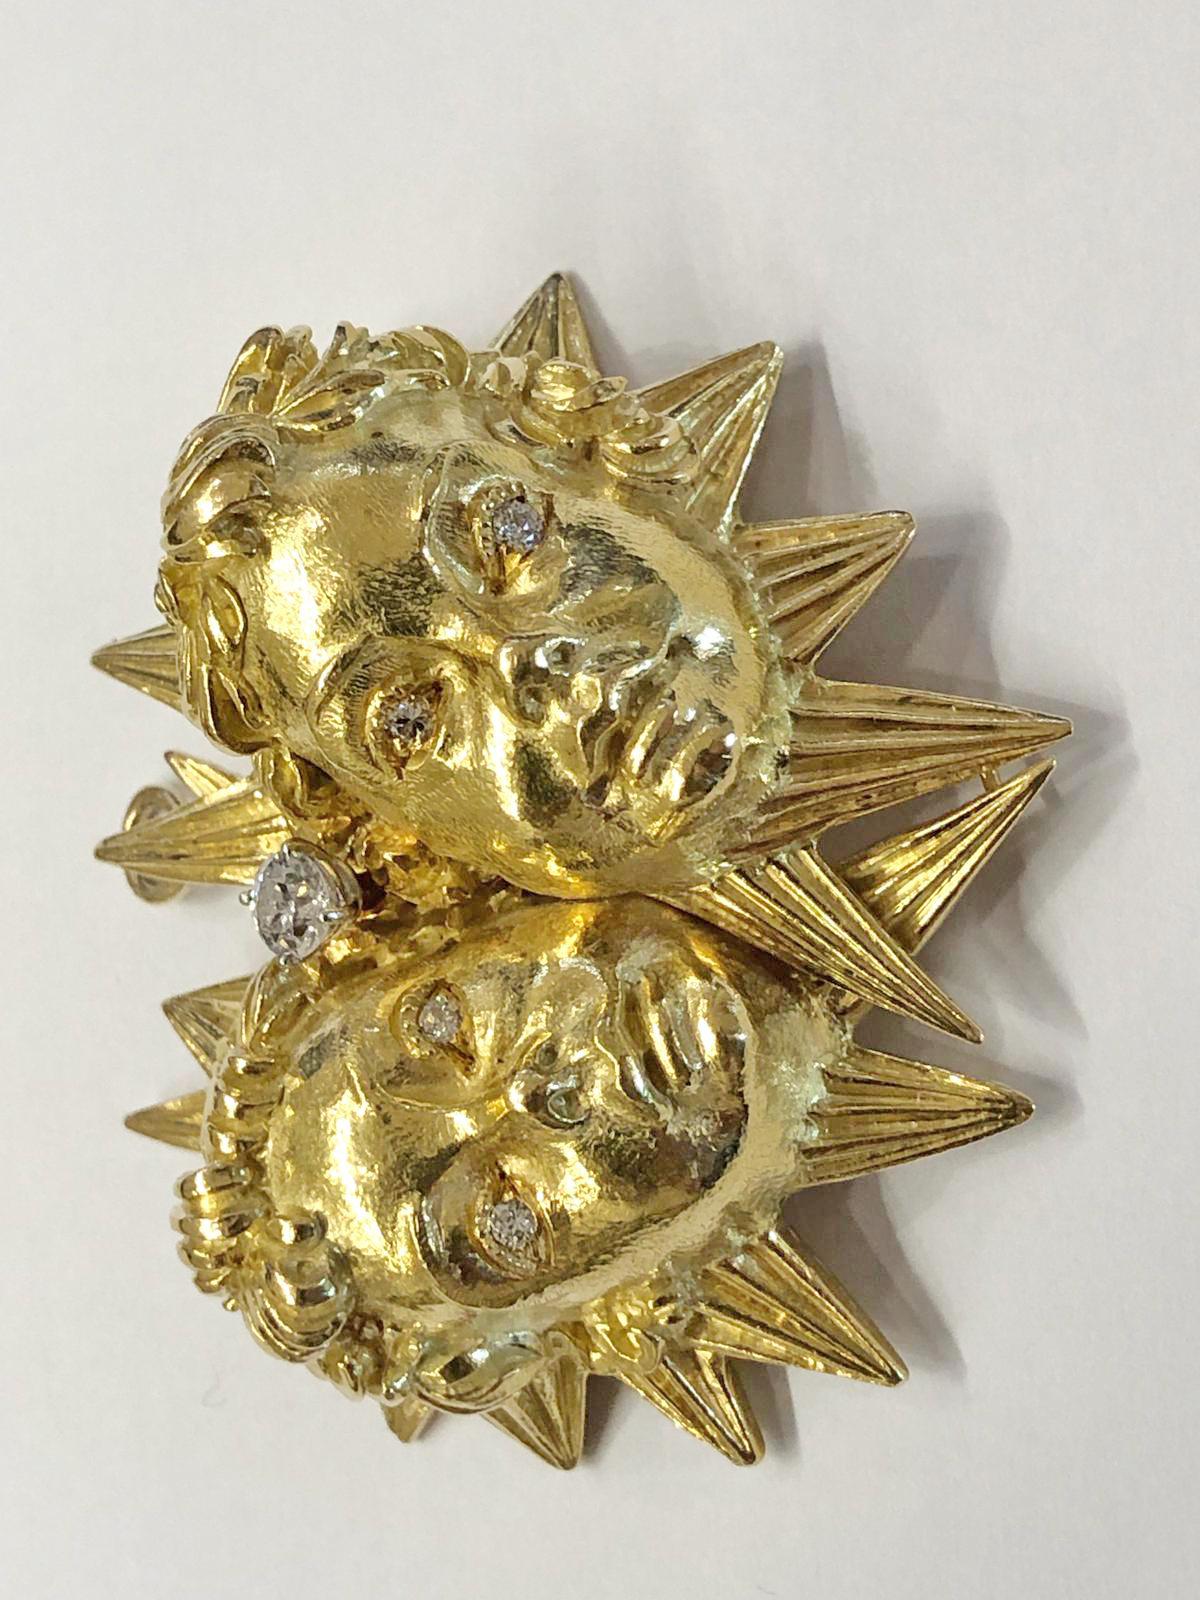 Pendentif/broche en or jaune 18k à motif d'enfant à deux têtes, serti de diamants ronds de taille brillant, signé David Webb.
dimensions : environ 2